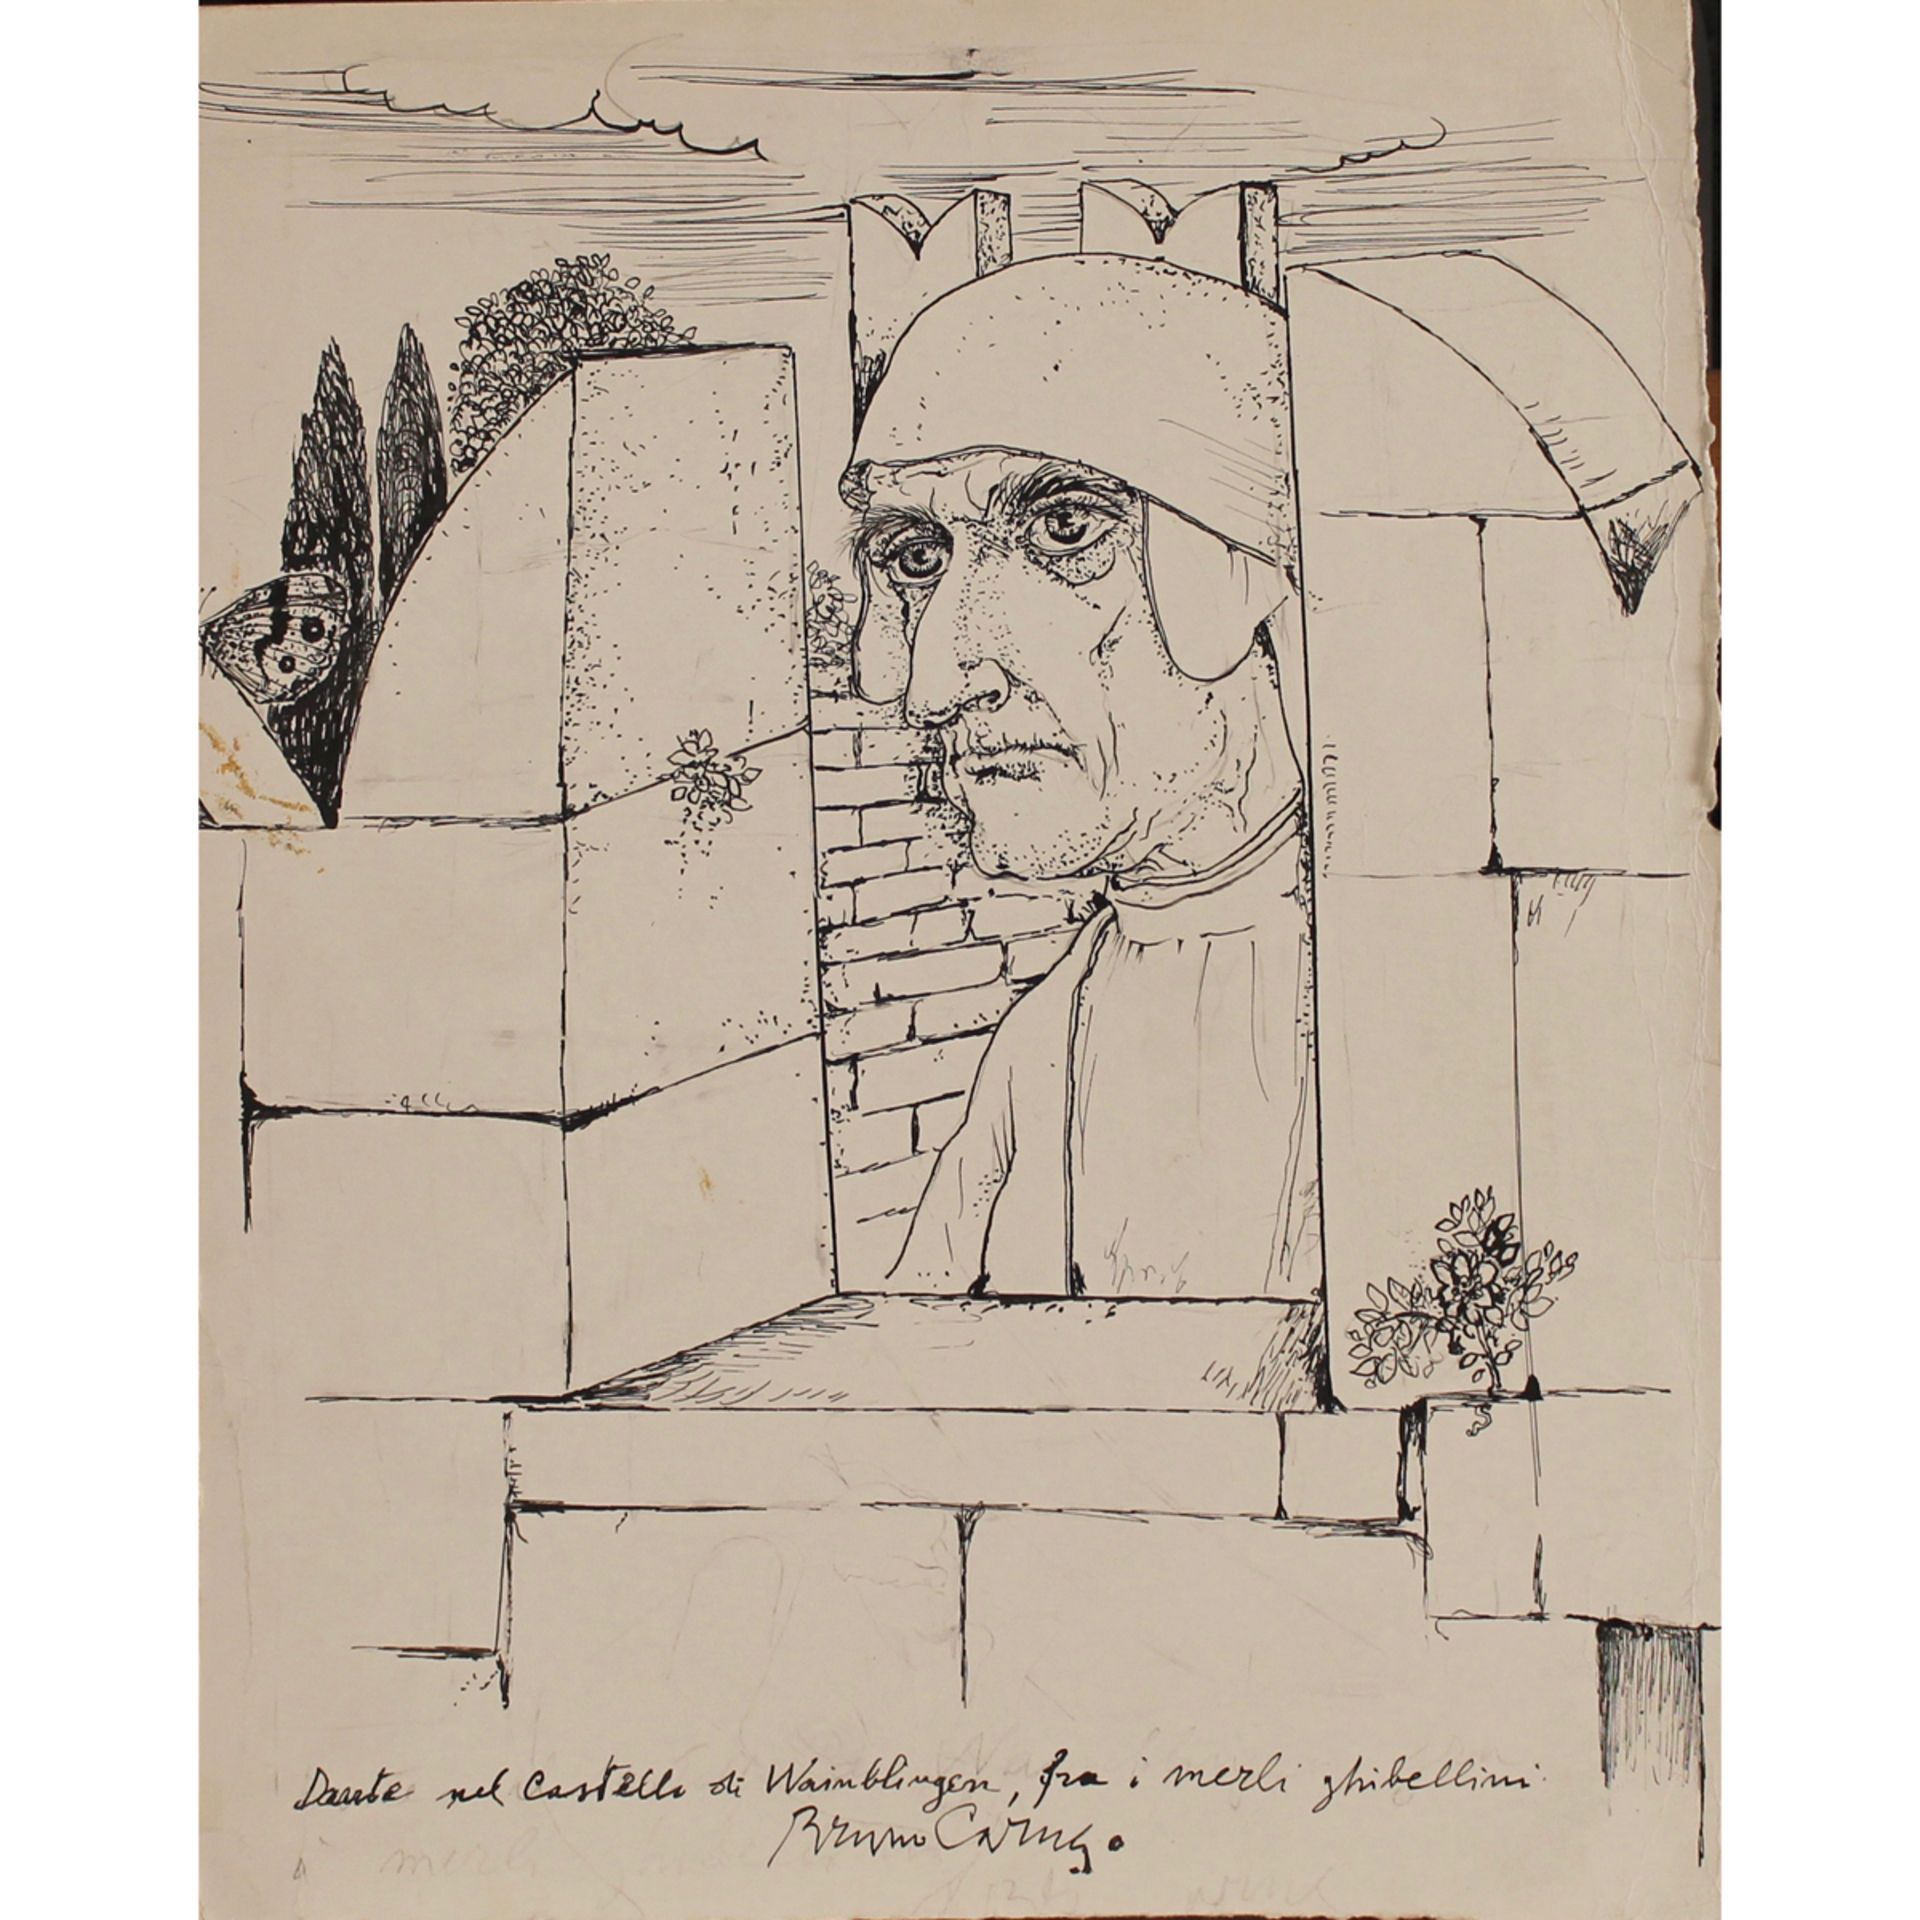 BRUNO CARUSO (1927-2018) "Dante al castello di Waiblingen" - "Dante at Waiblingen Castle"